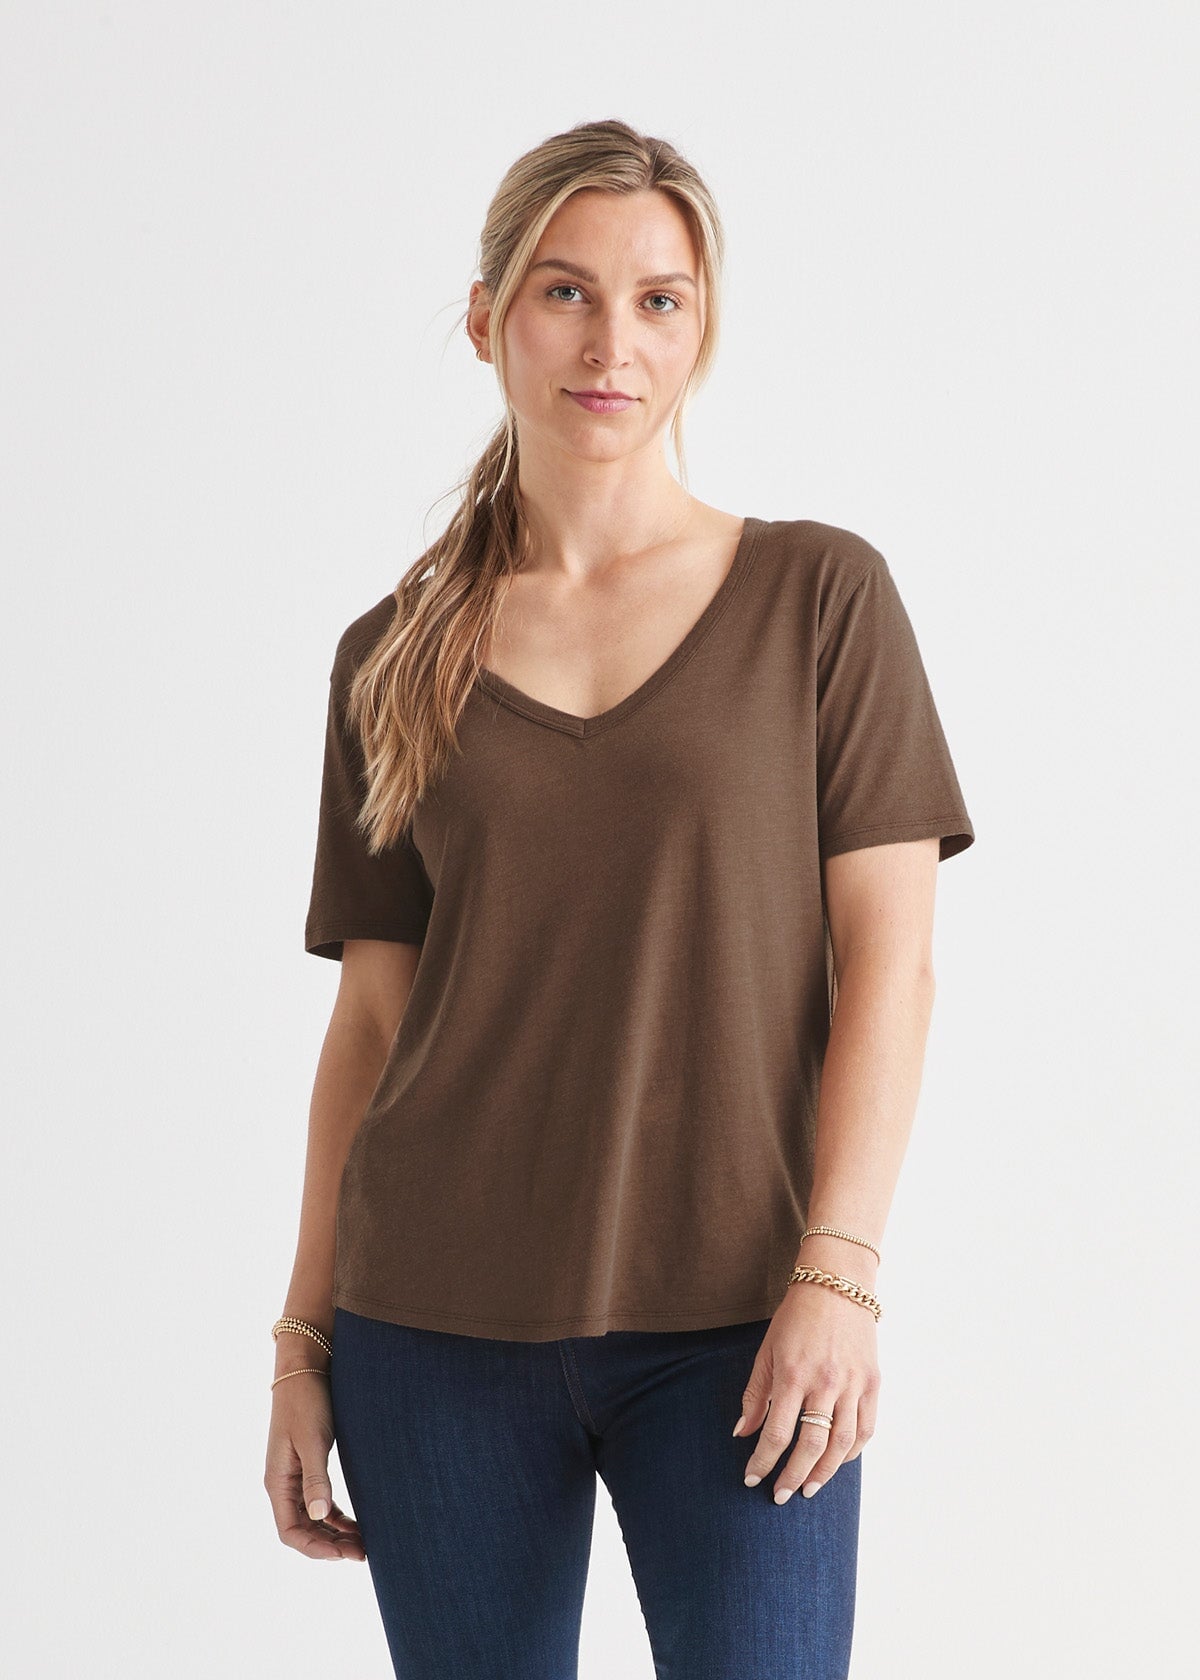 womens brown soft lightweight v-neck t-shirt front